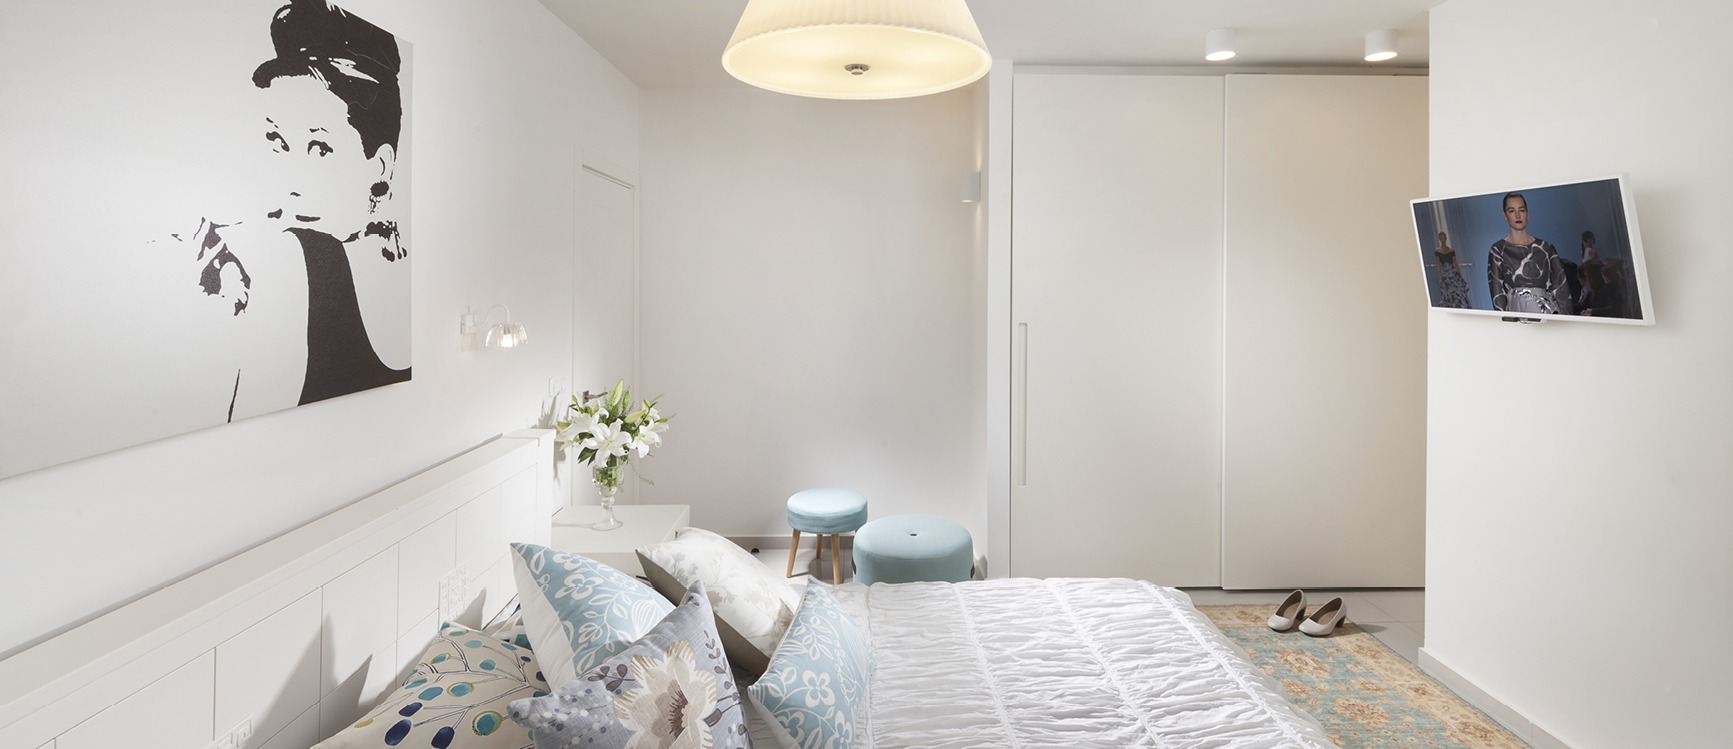 חדר שינה בצבעים לבן כחול בהתאמה אישית